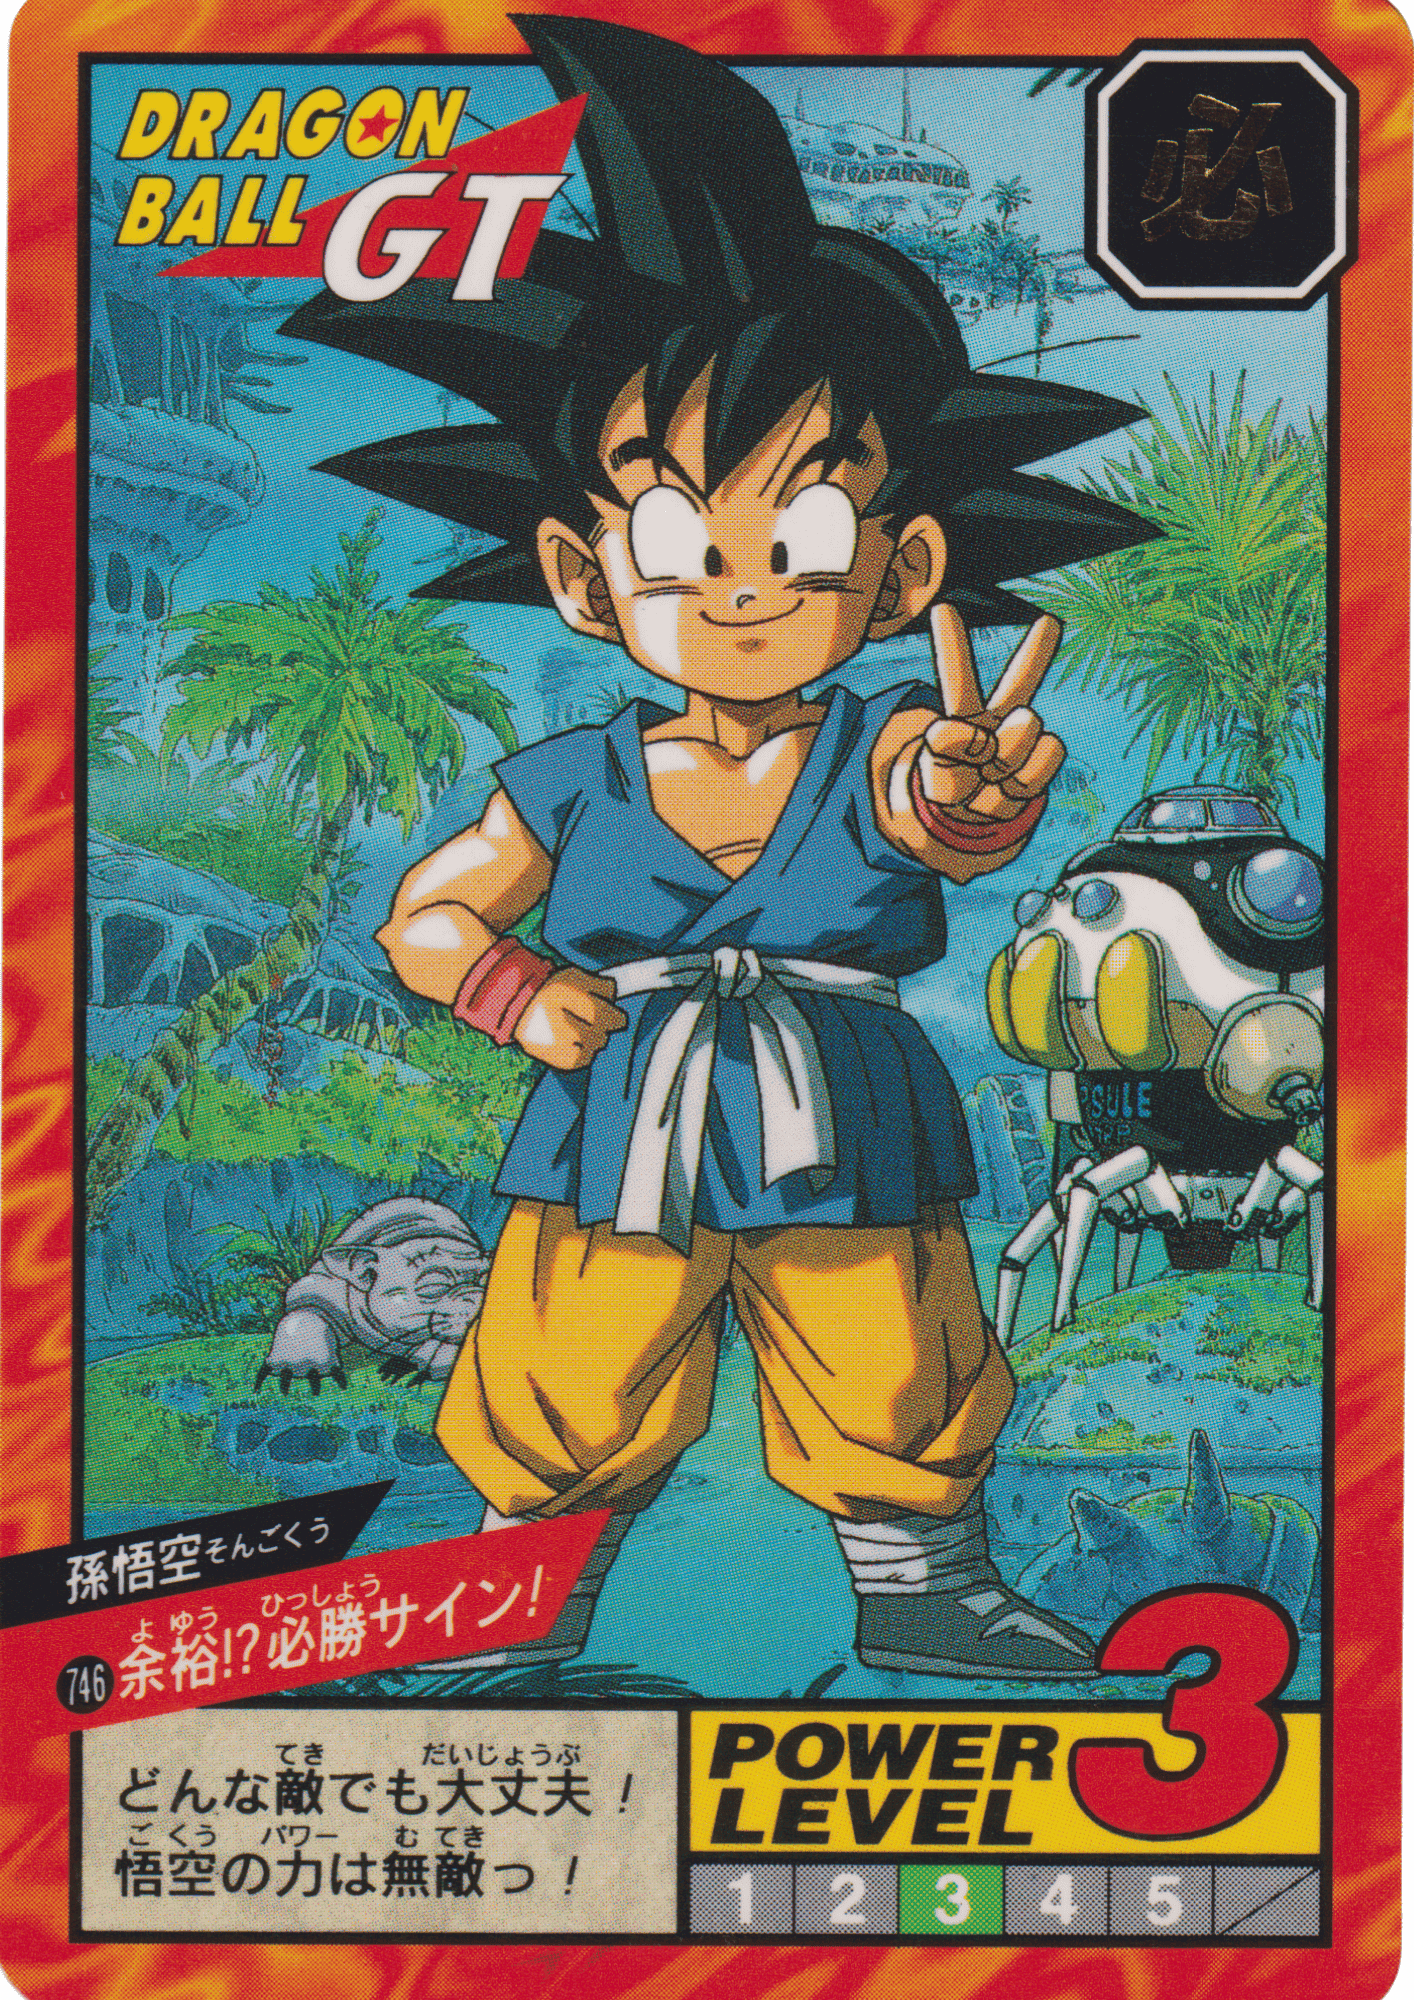 Goku No.746 | Carddass Super Battle ChitoroShop